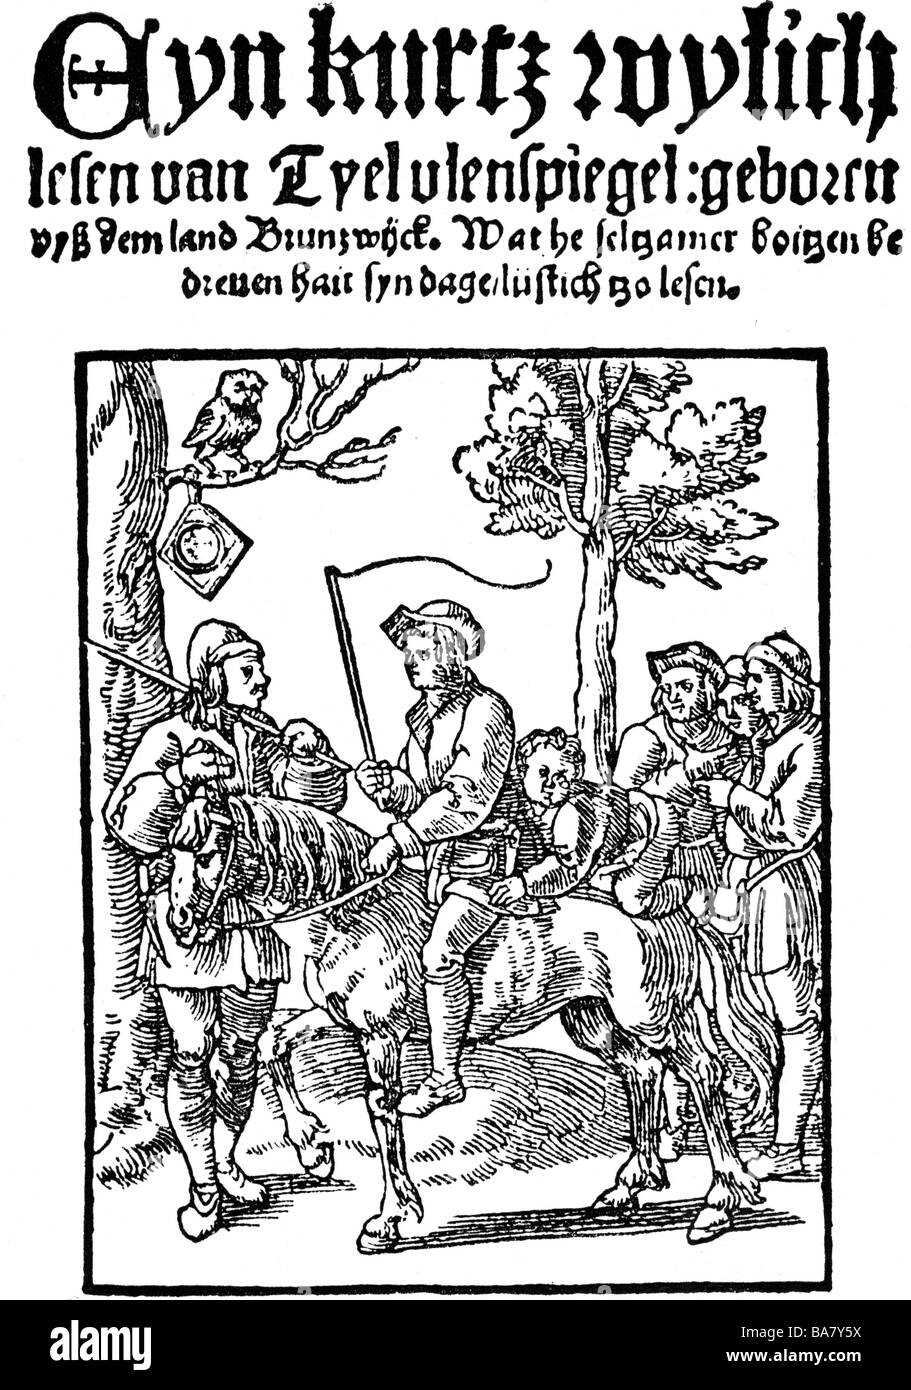 Eulenspiegel, Till (1300 - 1350), deutscher Joker, halbe Länge, Titel "Ain kurzweiig lesen von Tyel Ulenspiegel", gedruckt von Servais Krusster, Köln, ca. 1520 / 1530, Stockfoto